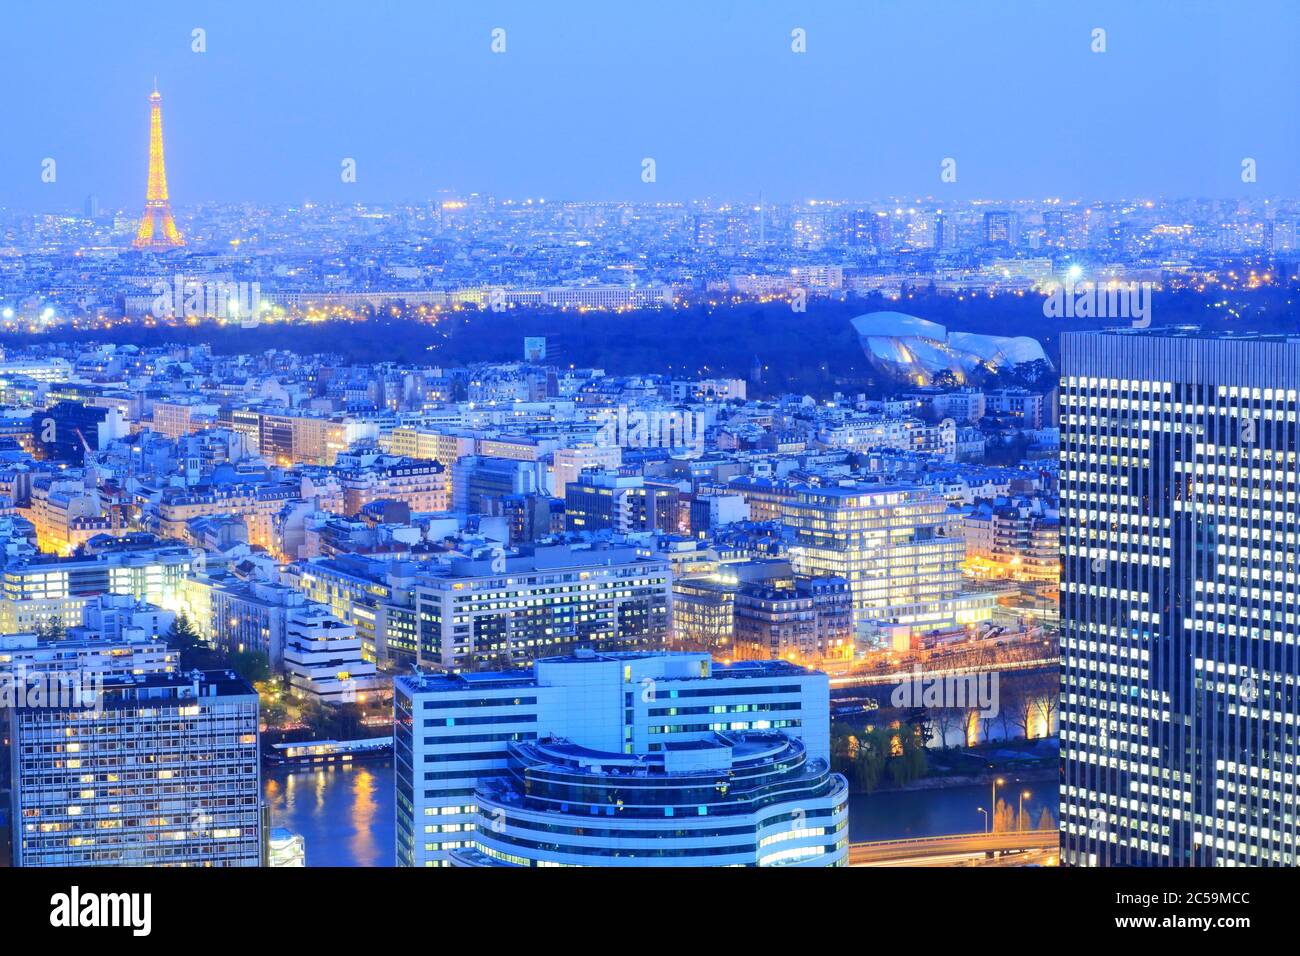 Louis Vuitton Building Avenue Des Champsélysées Paris France At Night Stock  Photo - Download Image Now - iStock